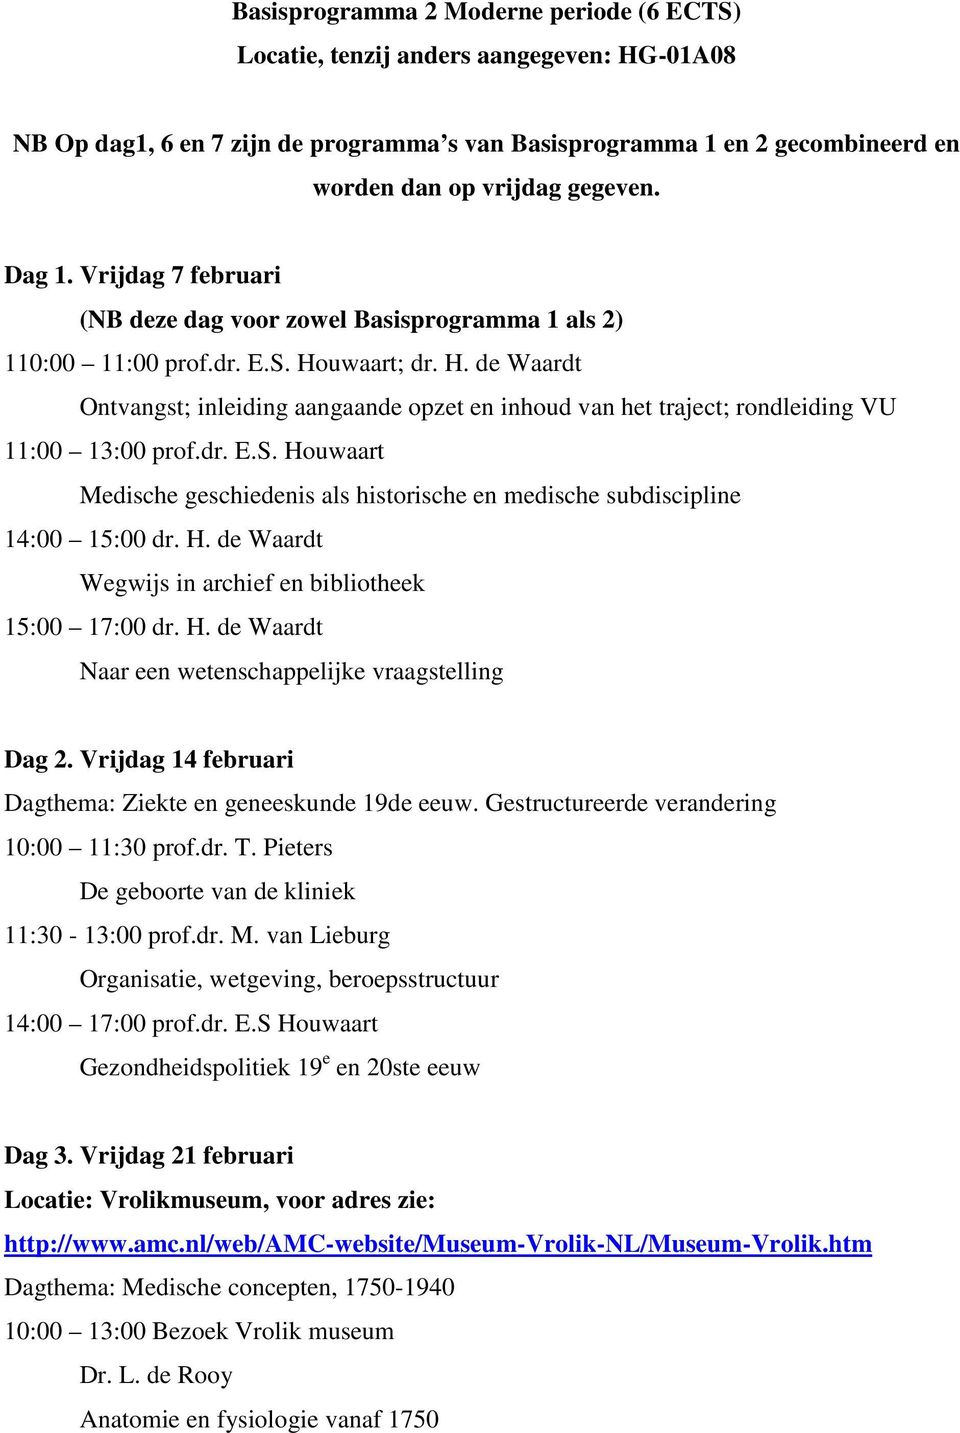 H. de Waardt Wegwijs in archief en bibliotheek 15:00 17:00 dr. H. de Waardt Naar een wetenschappelijke vraagstelling Dag 2. Vrijdag 14 februari Dagthema: Ziekte en geneeskunde 19de eeuw.